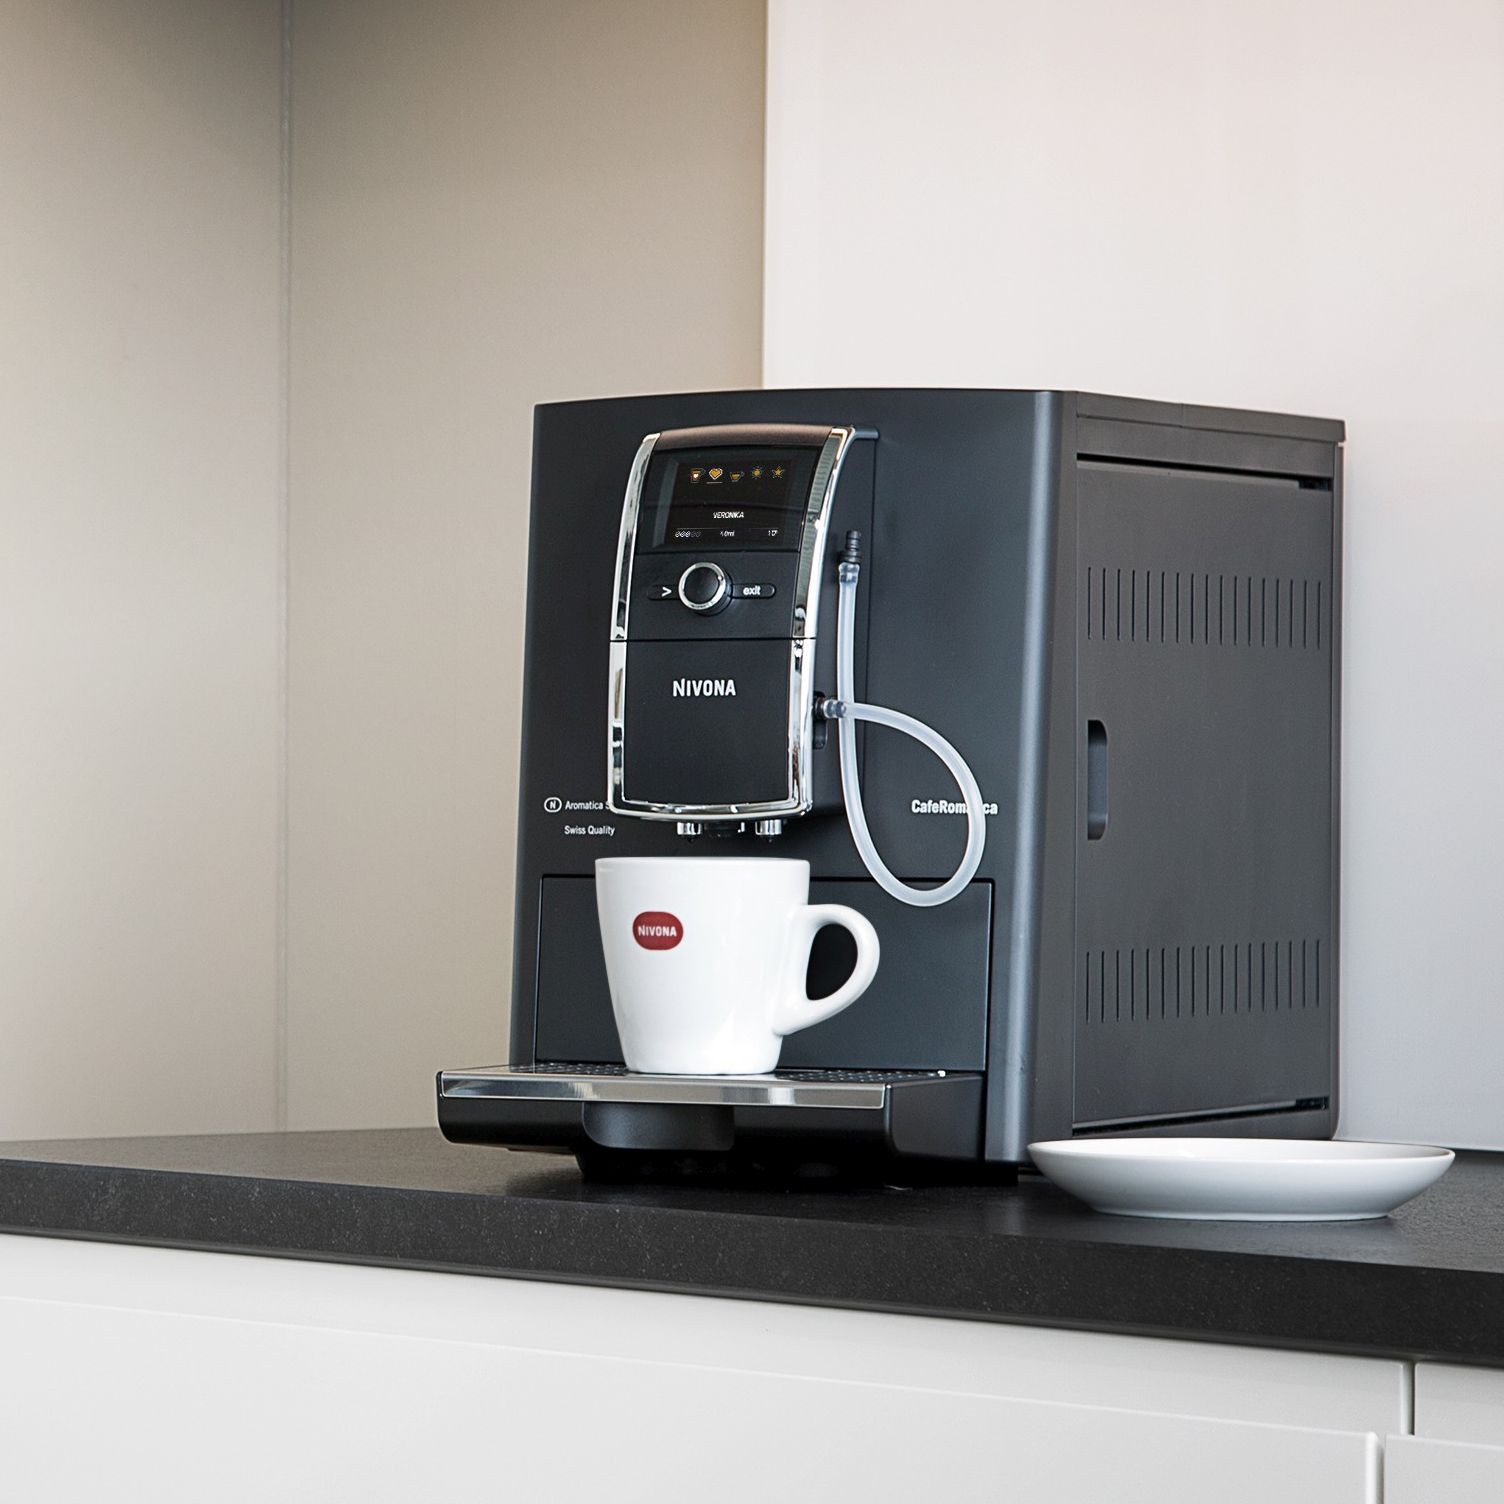 
						NIVONA - CafeRomatica 841 - automatyczny ekspres do kawy
					